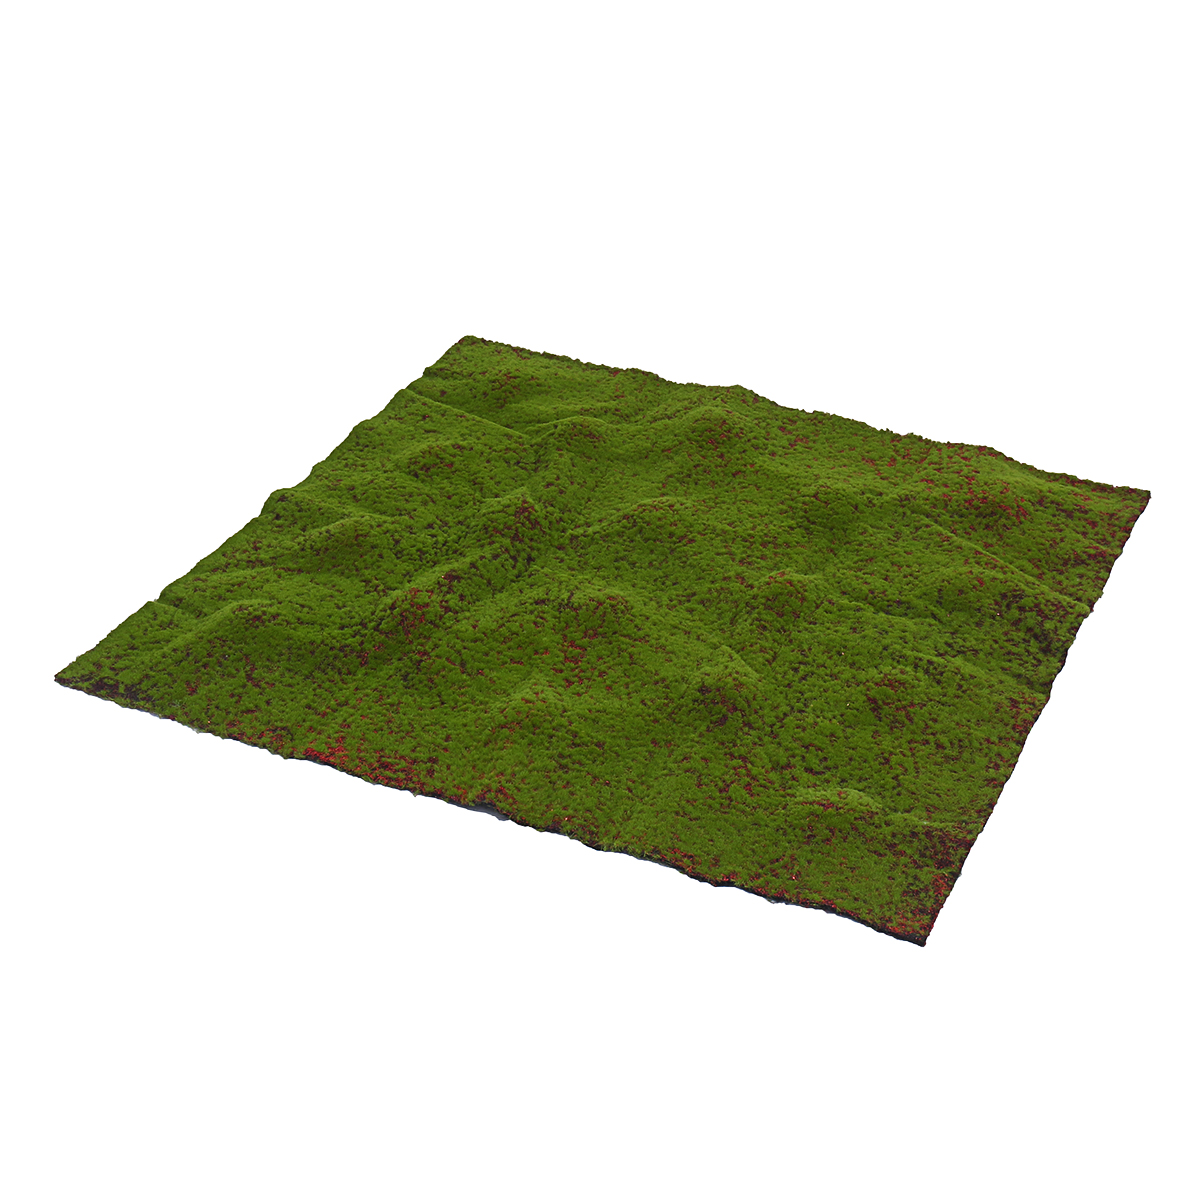 Artificial-Moss-Grass-Synthetic-Mat-Landscape-Lawn-Pet-Dog-Turf-Garden-Yard-Floor-Mat-1636381-4